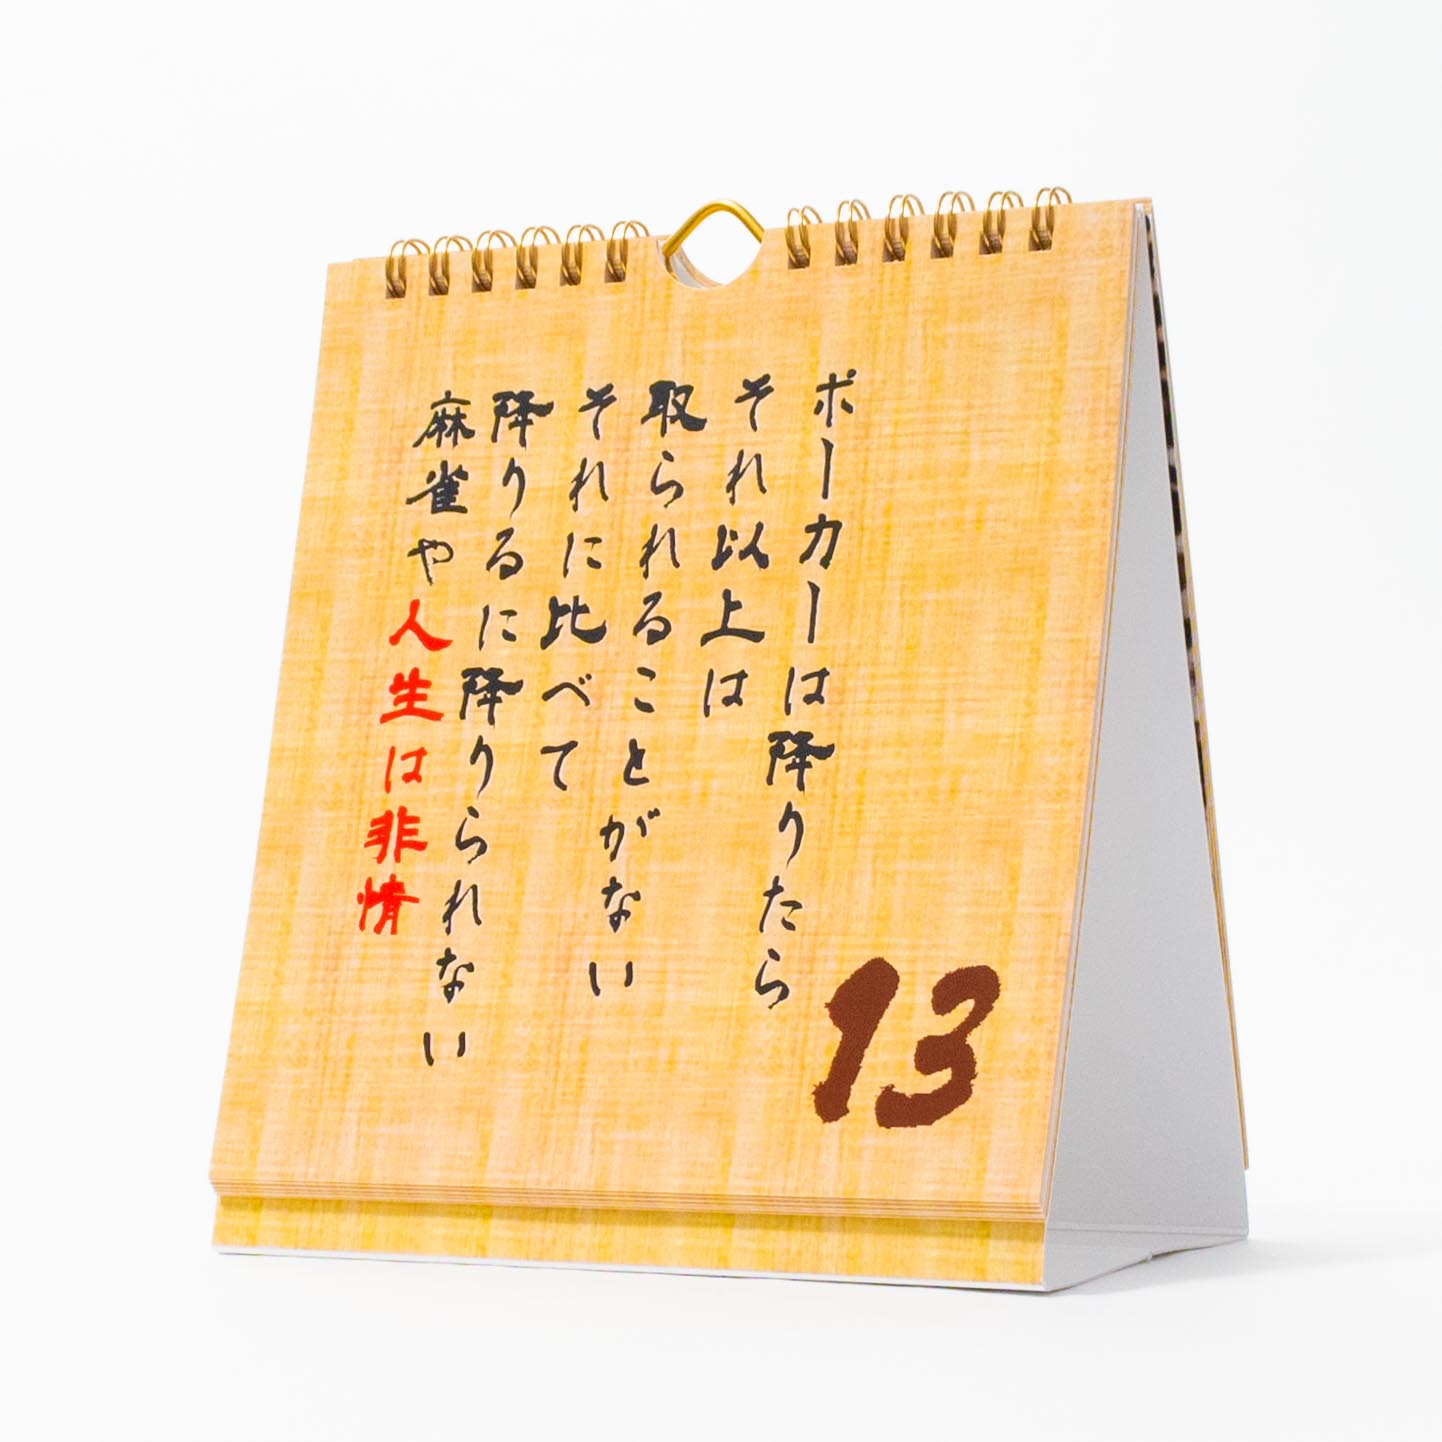 「高田  亮 様」製作のオリジナルカレンダー ギャラリー写真2